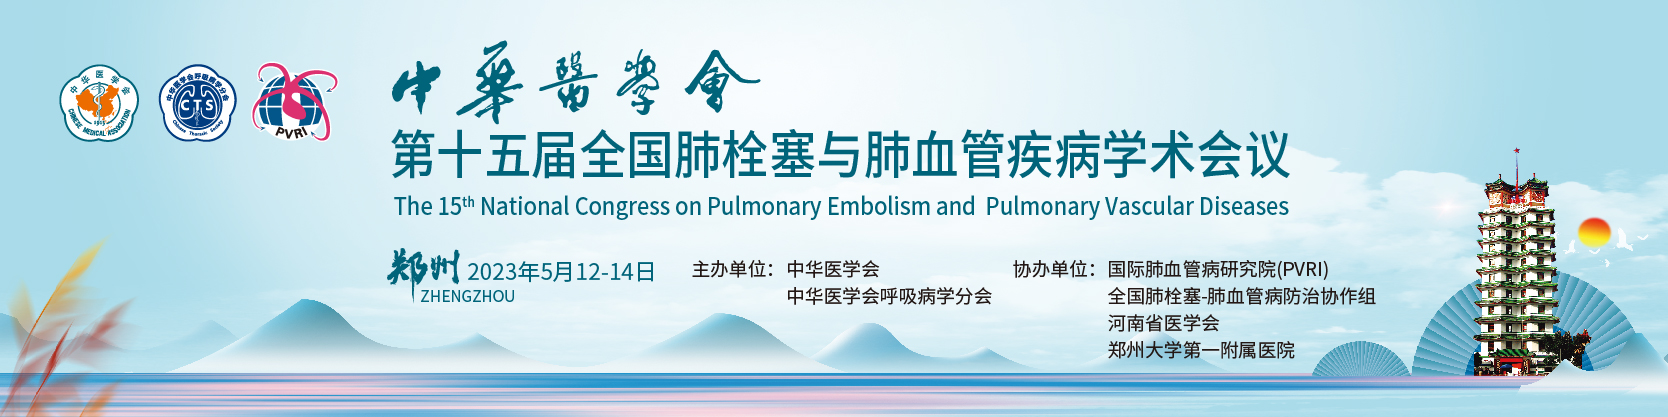 中华医学会第十五届全国肺栓塞与肺血管疾病学术会议